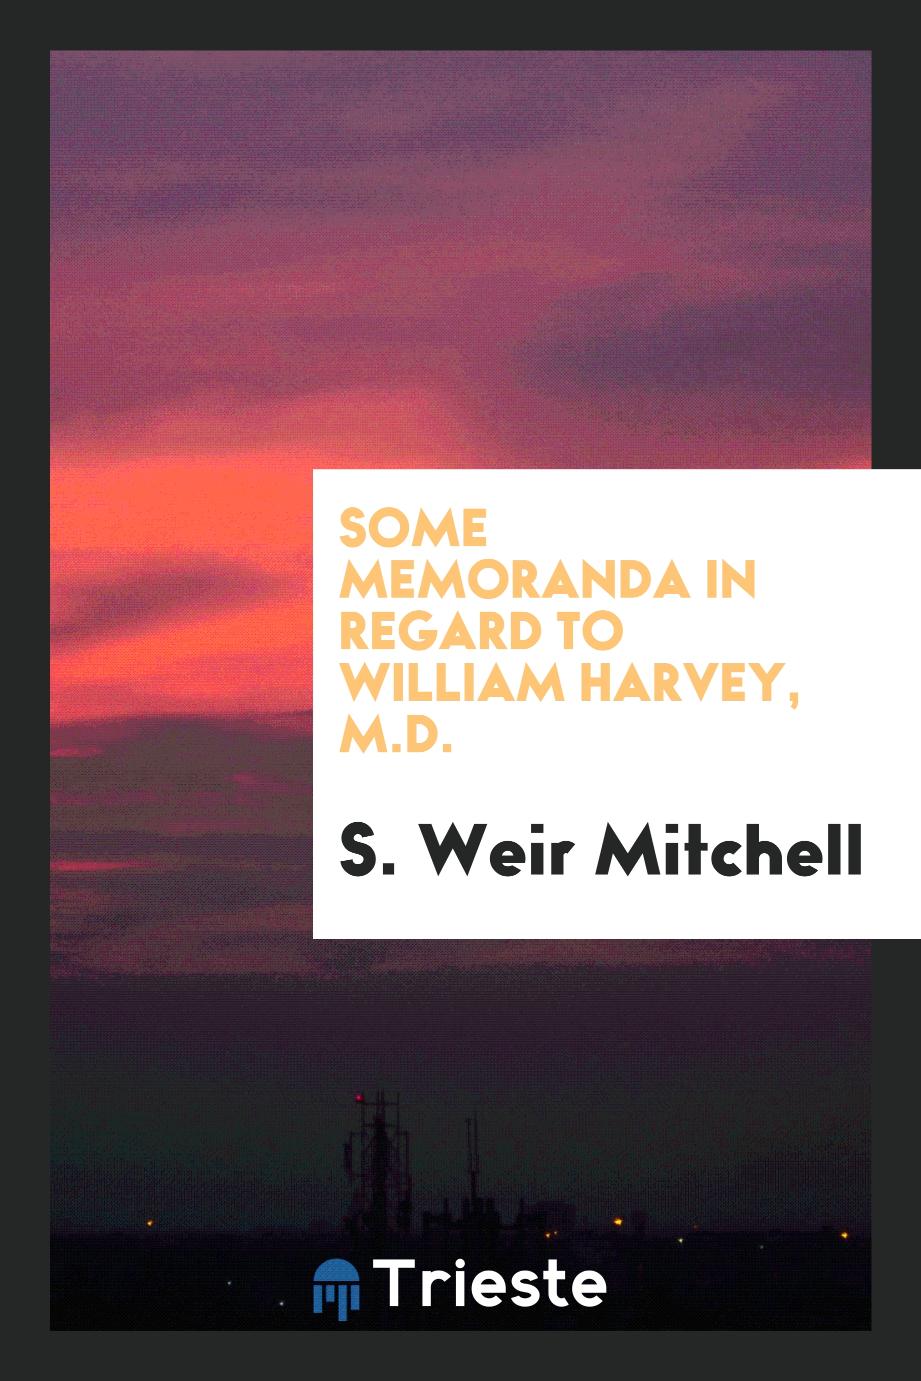 S. Weir Mitchell - Some Memoranda in Regard to William Harvey, M.D.